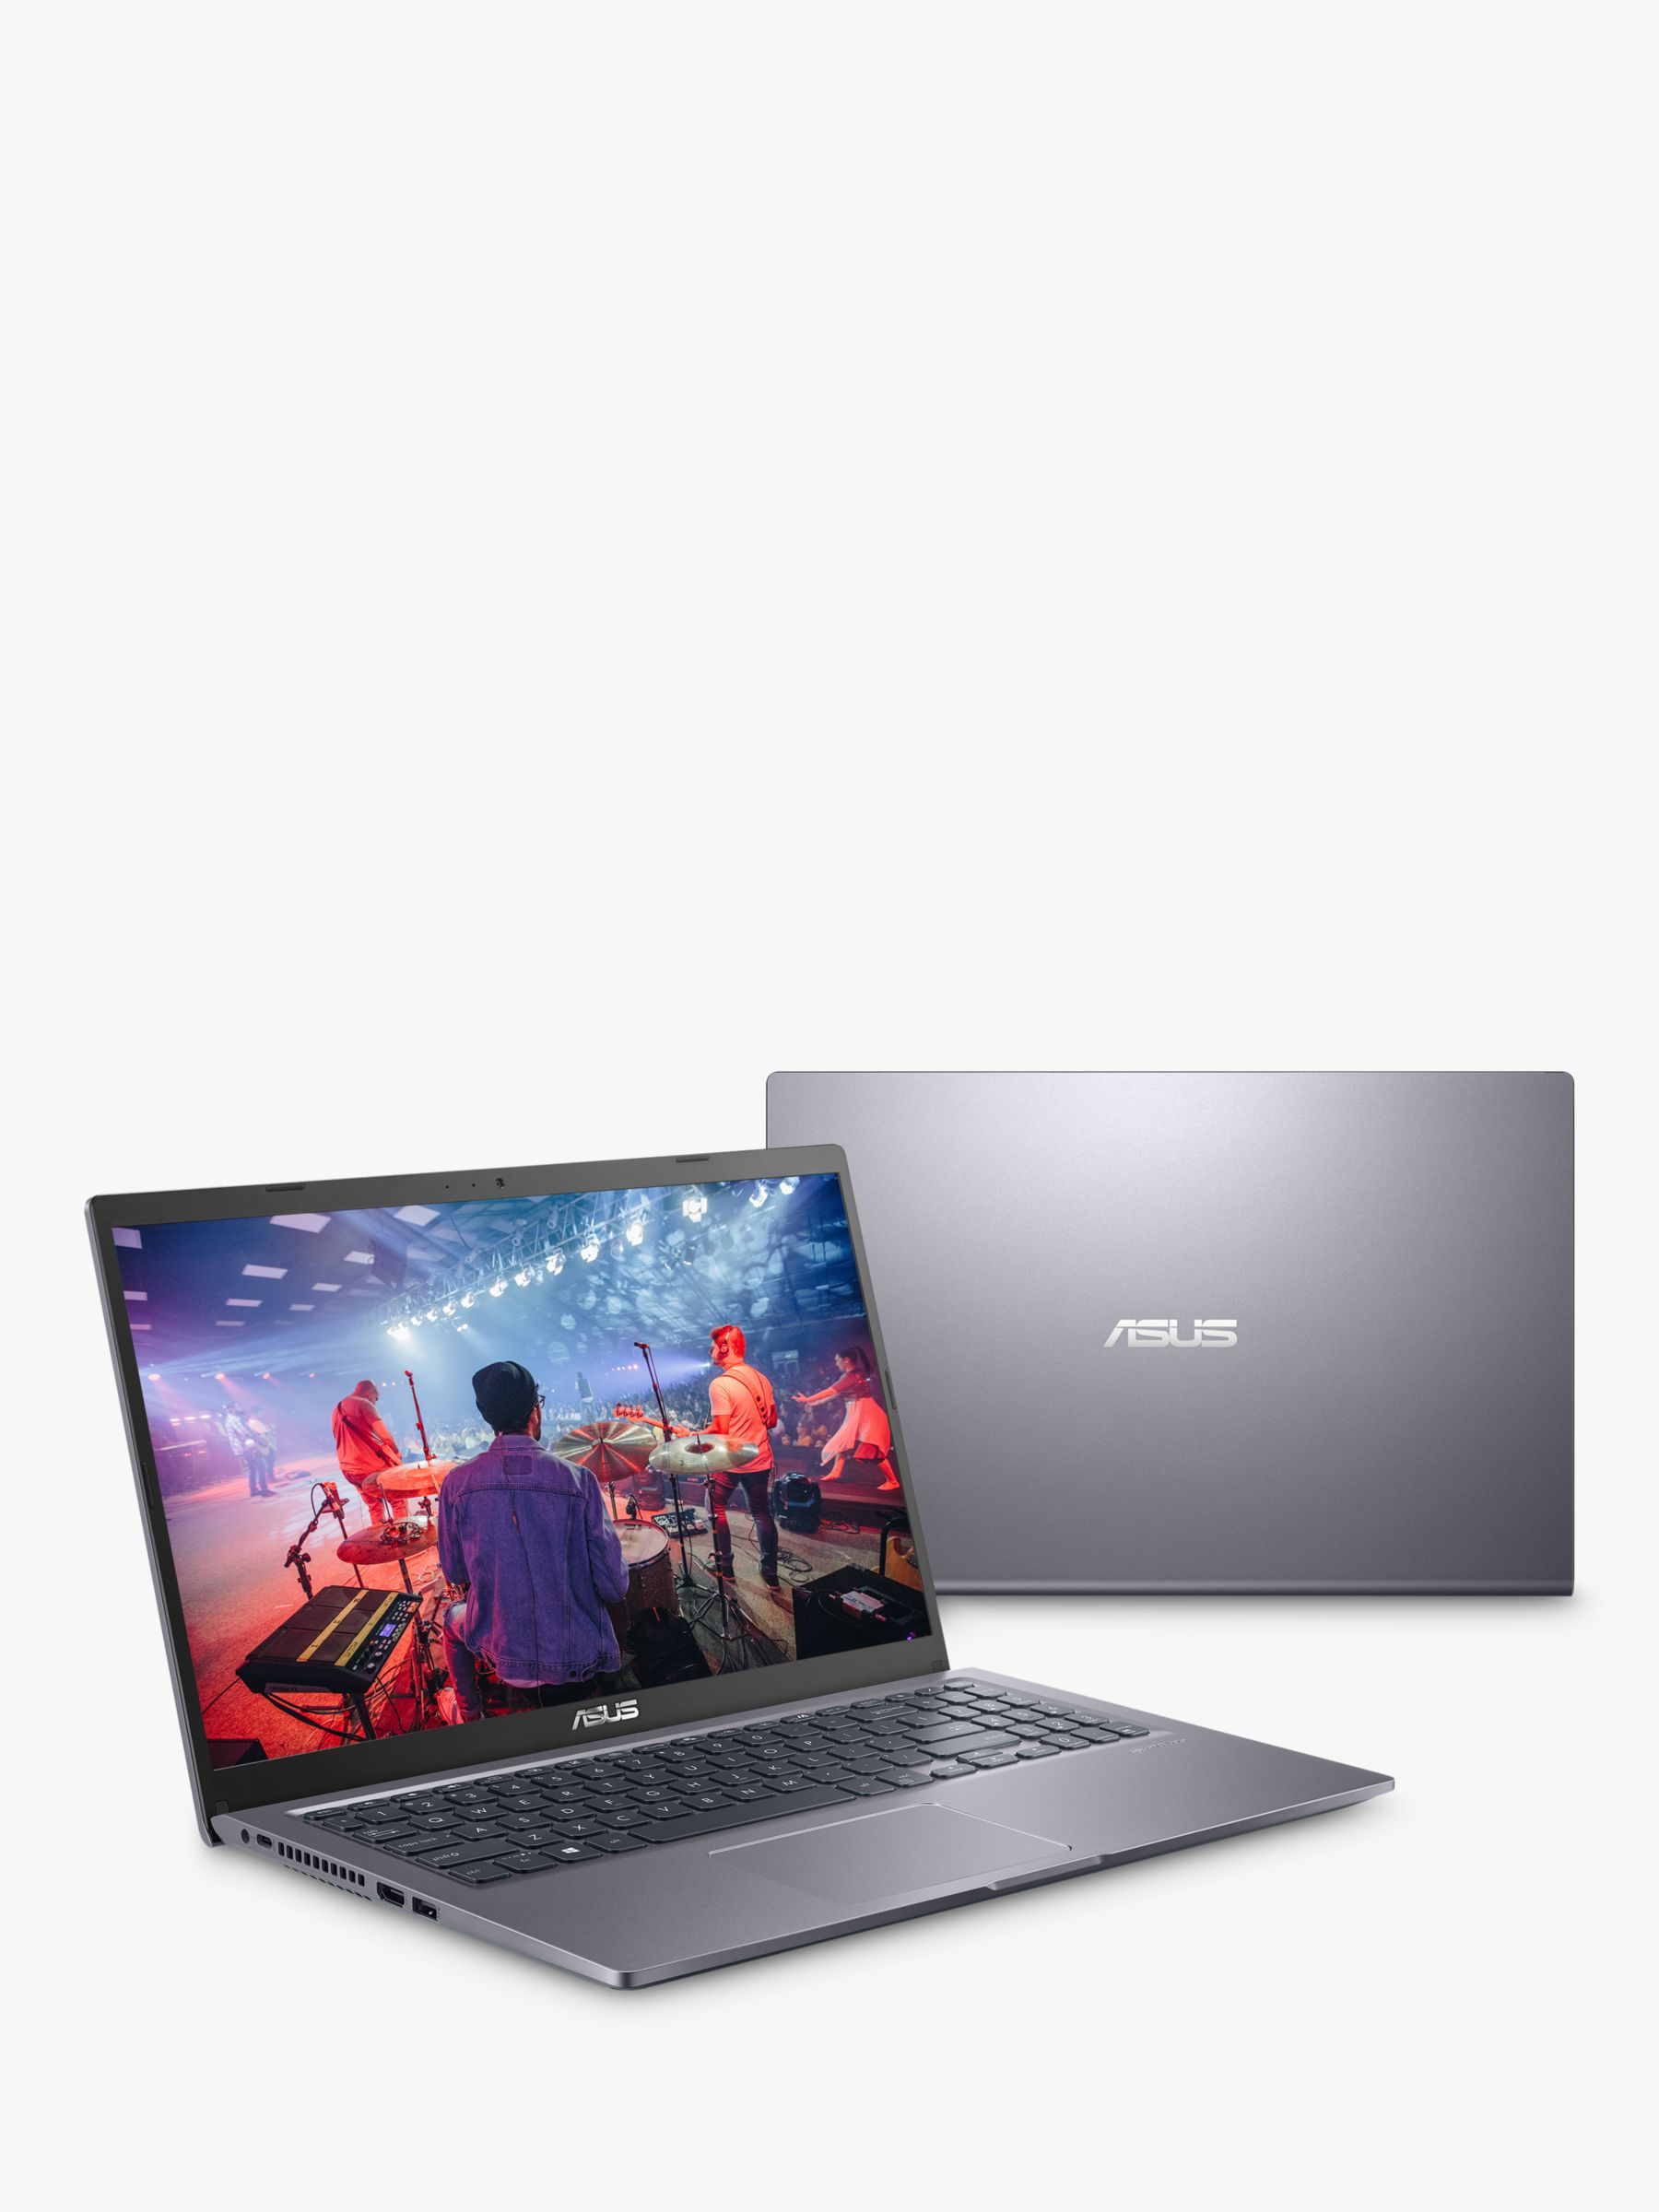 ASUS X515EA-EJ300T Laptop, Intel Core i3 Processor, 4GB RAM, 128GB SSD, 15.6